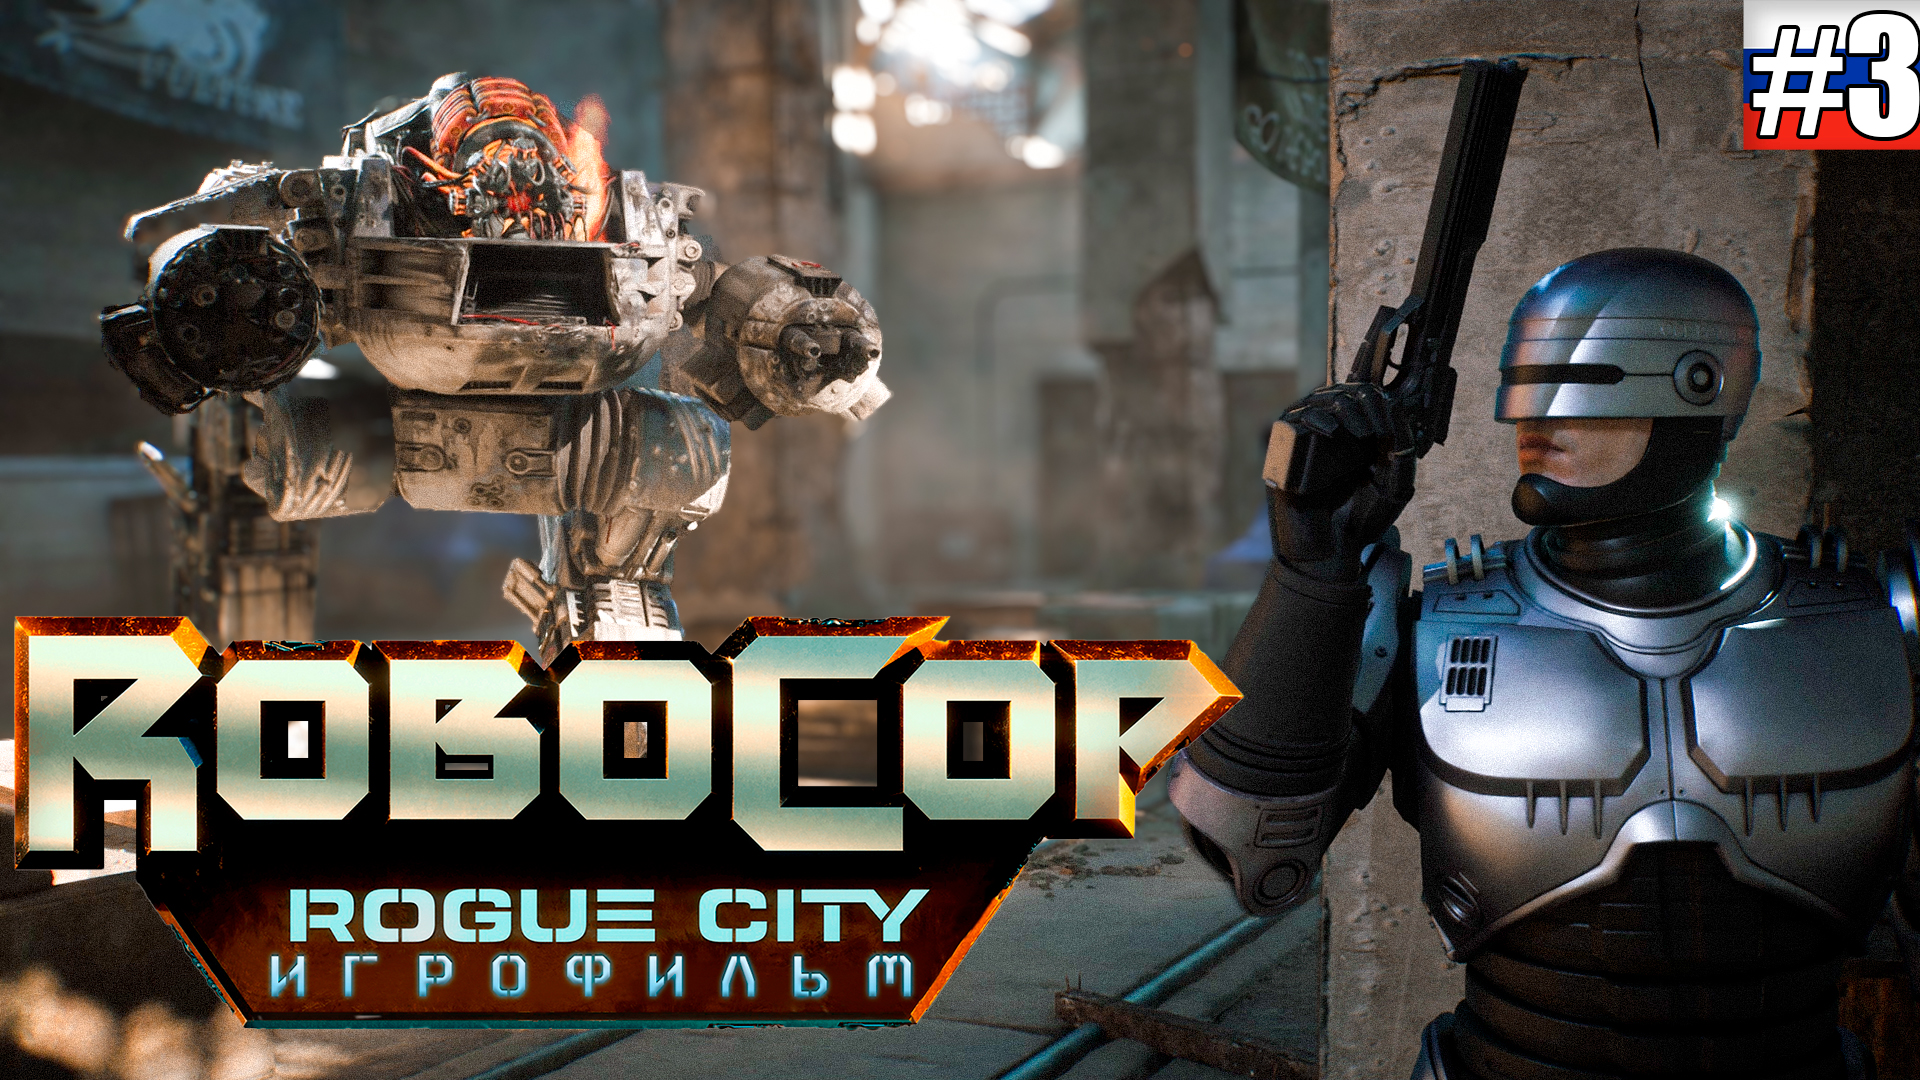 RoboCop Rogue City | ИГРОФИЛЬМ #3 (русская озвучка)